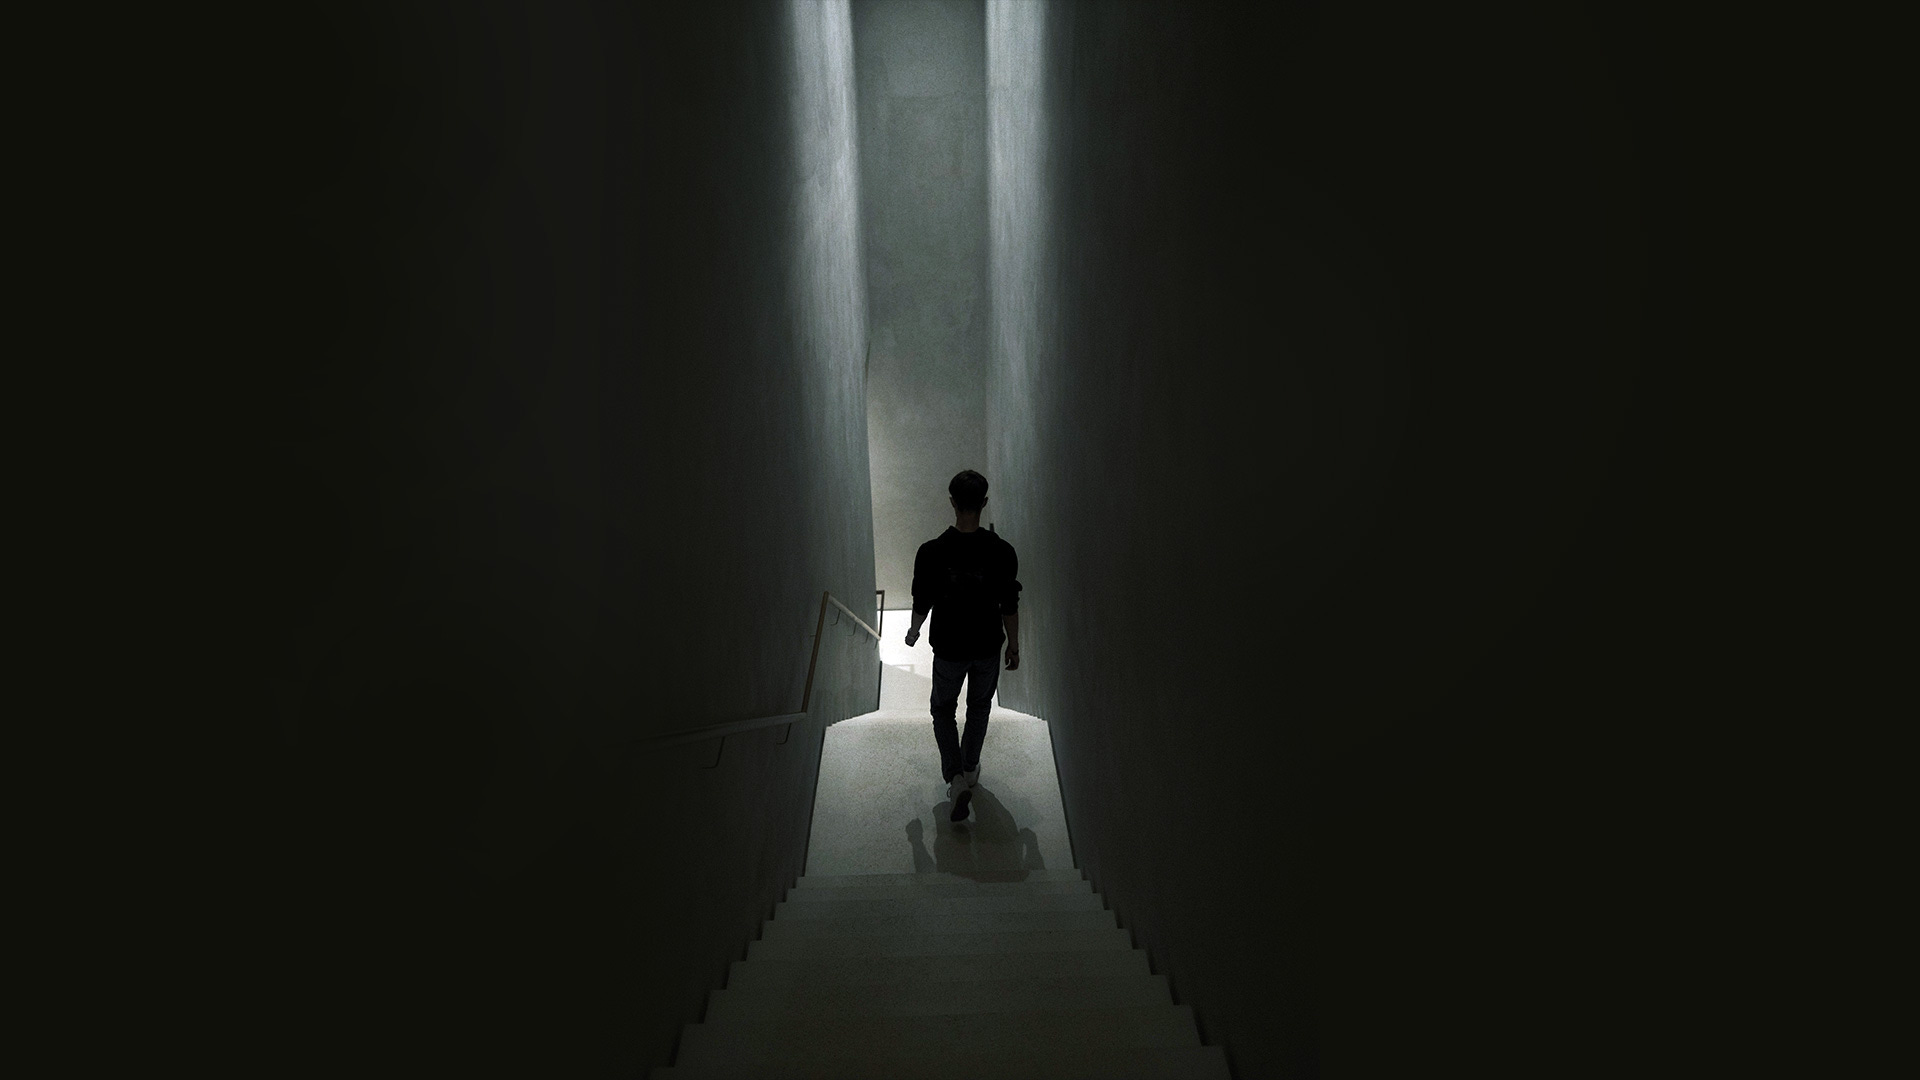 A person walking down a dark staircase